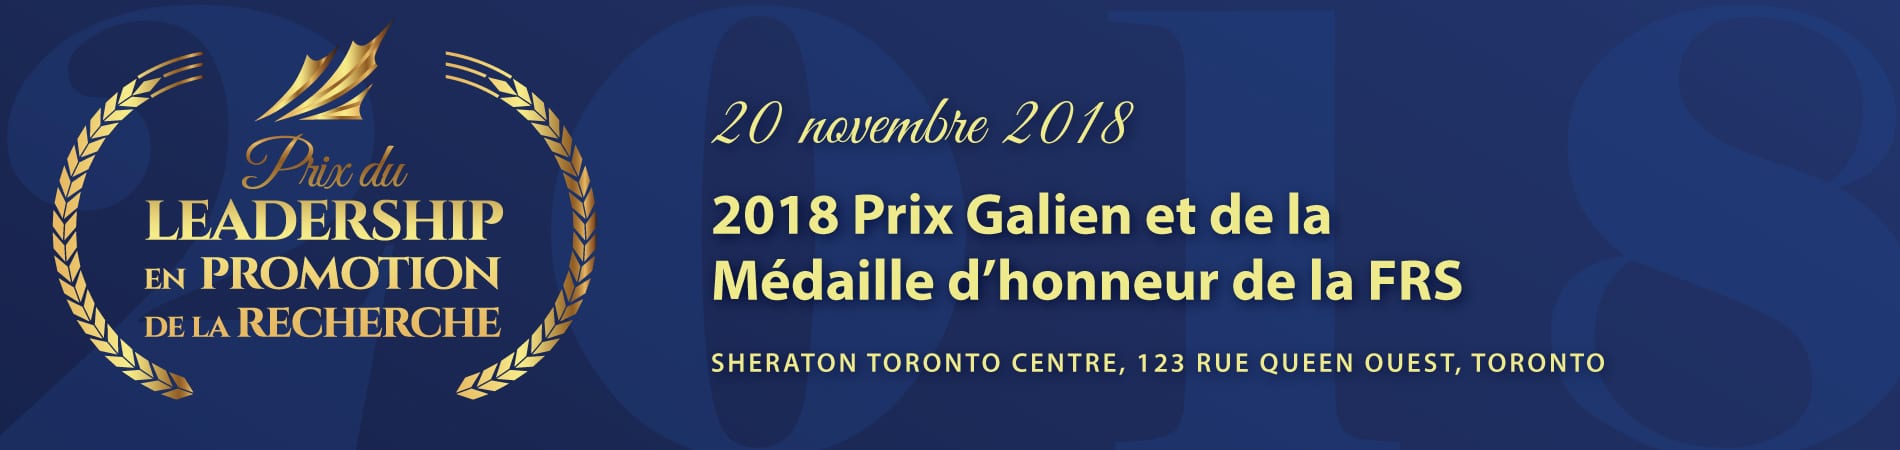 2018 Prix Galien et de la Médaille d’honneur de la FRS